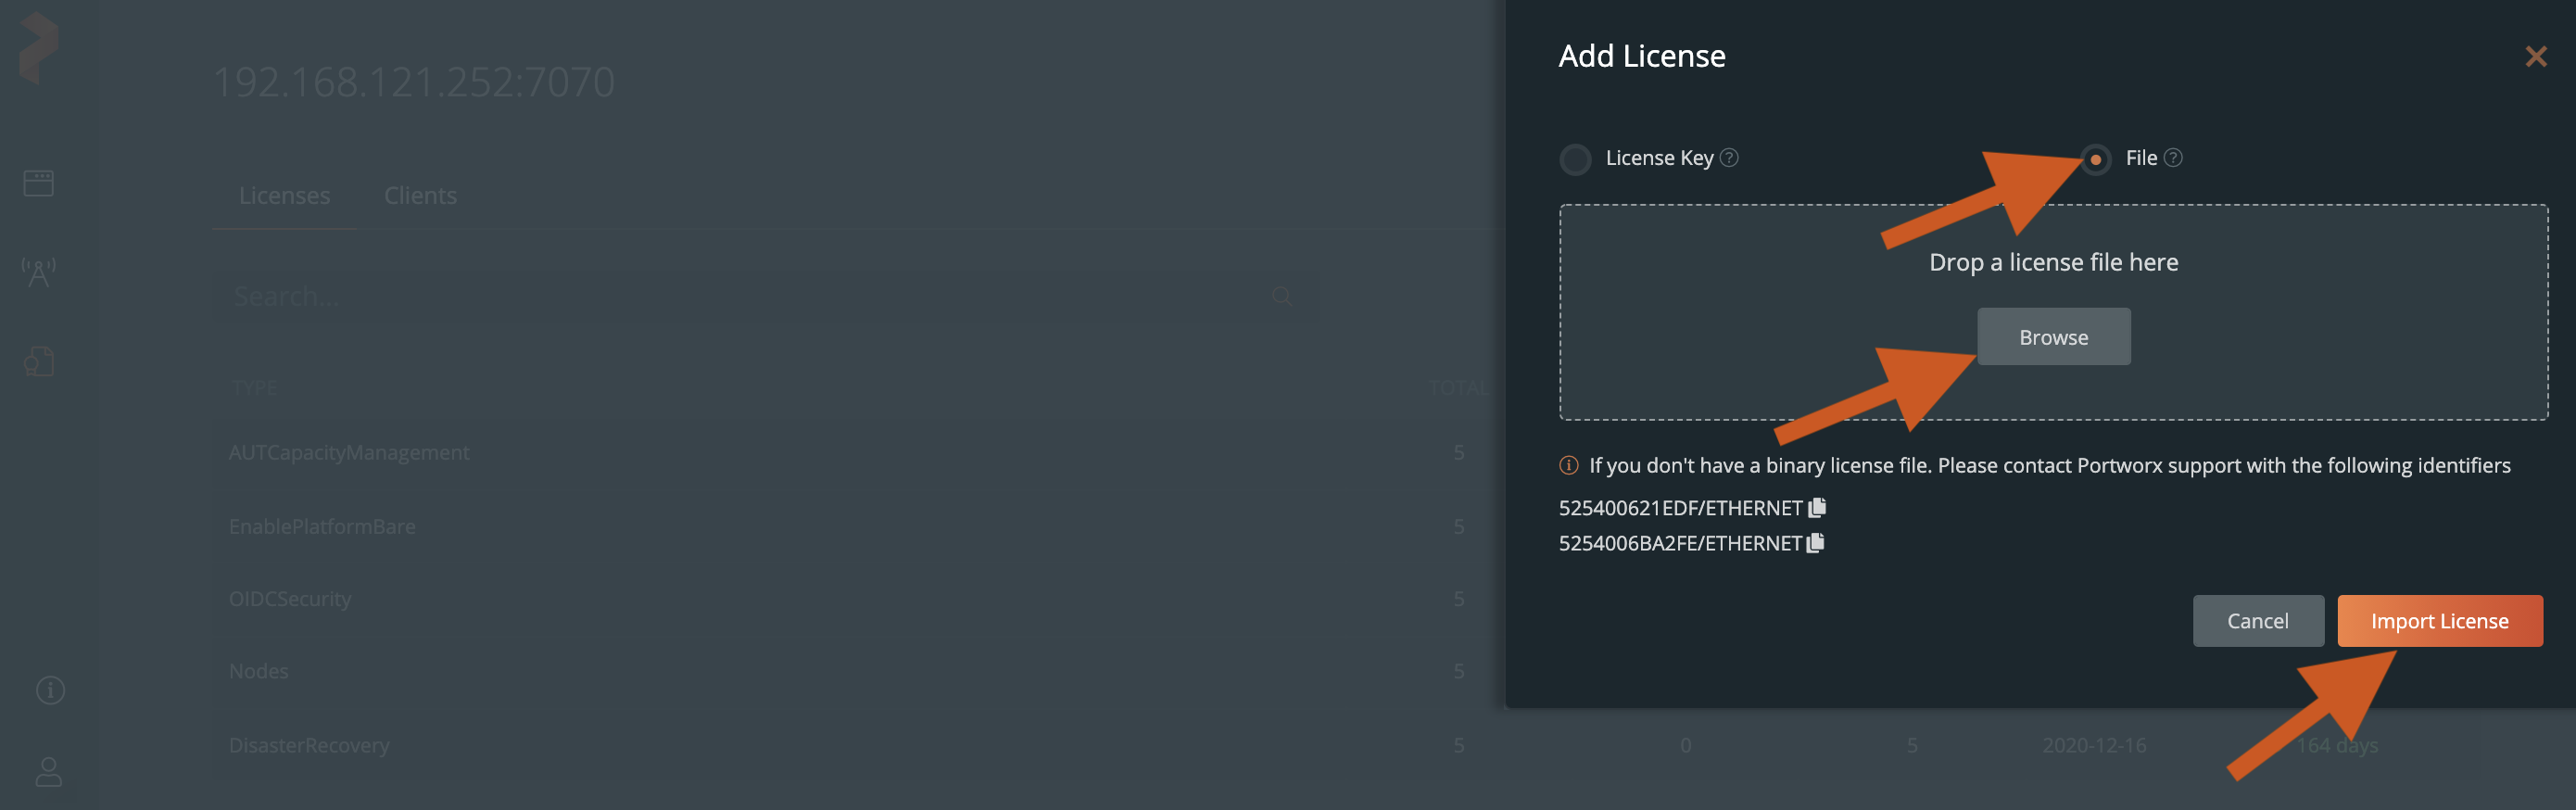 Upload license key file